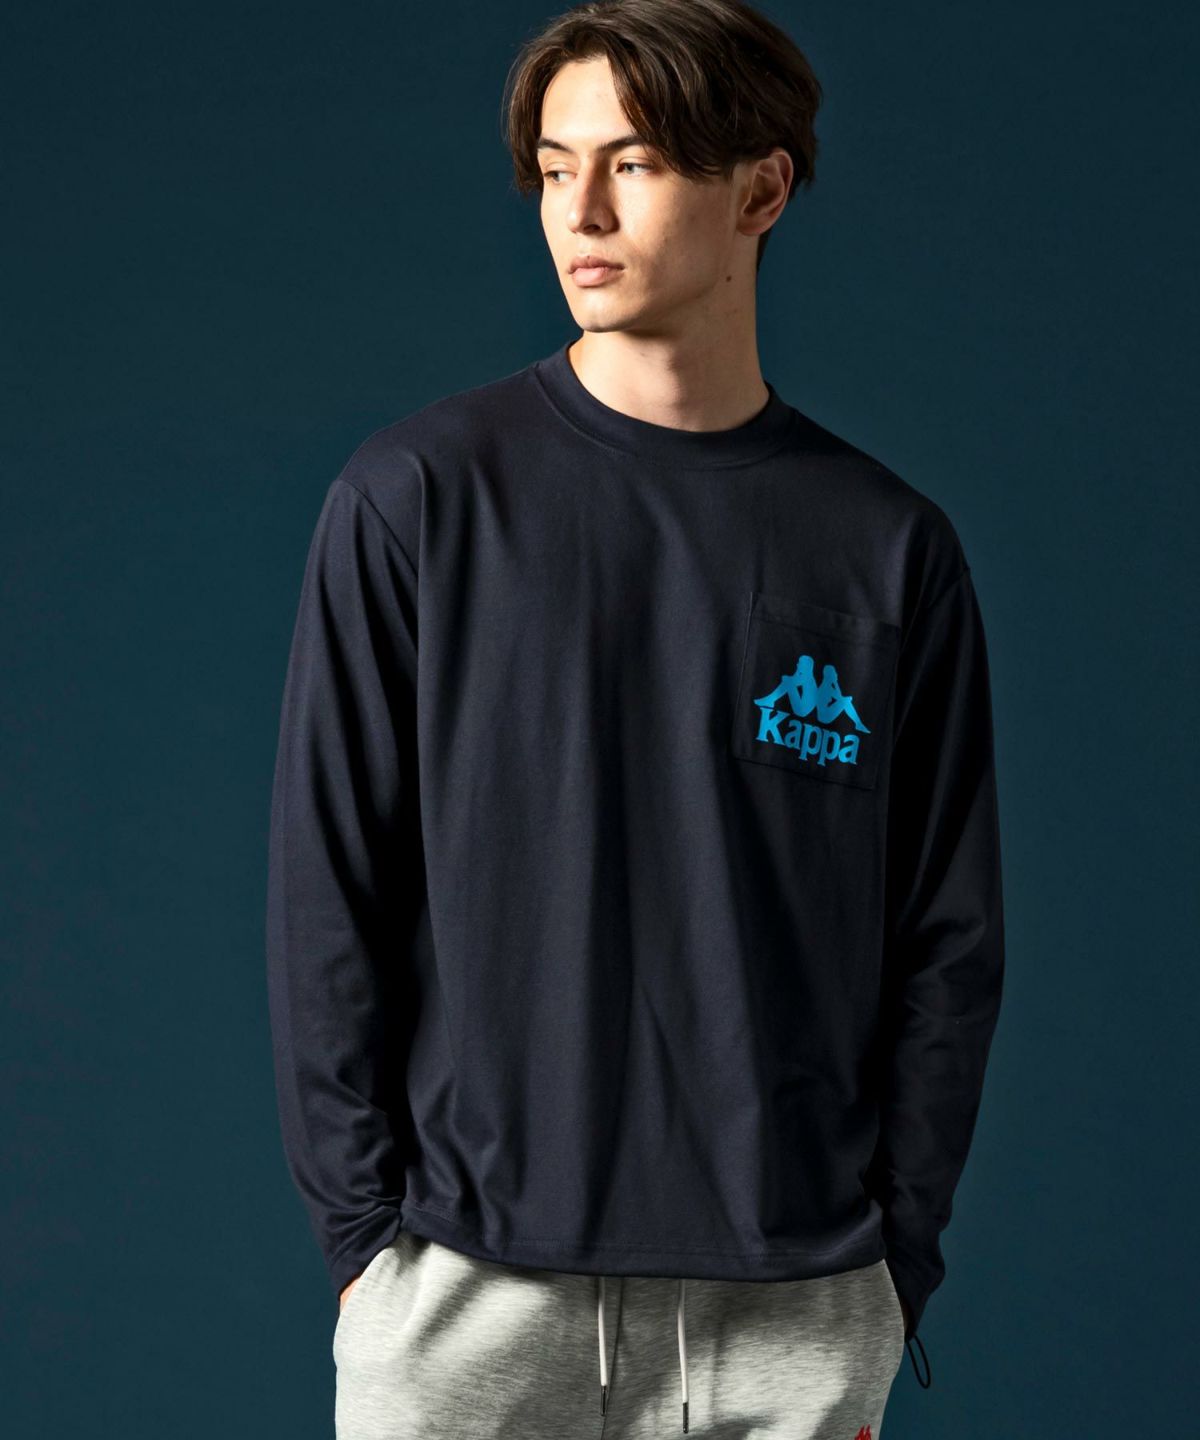 Kappa(カッパ)ドローコードロングTシャツ | SHIFFON公式通販サイト